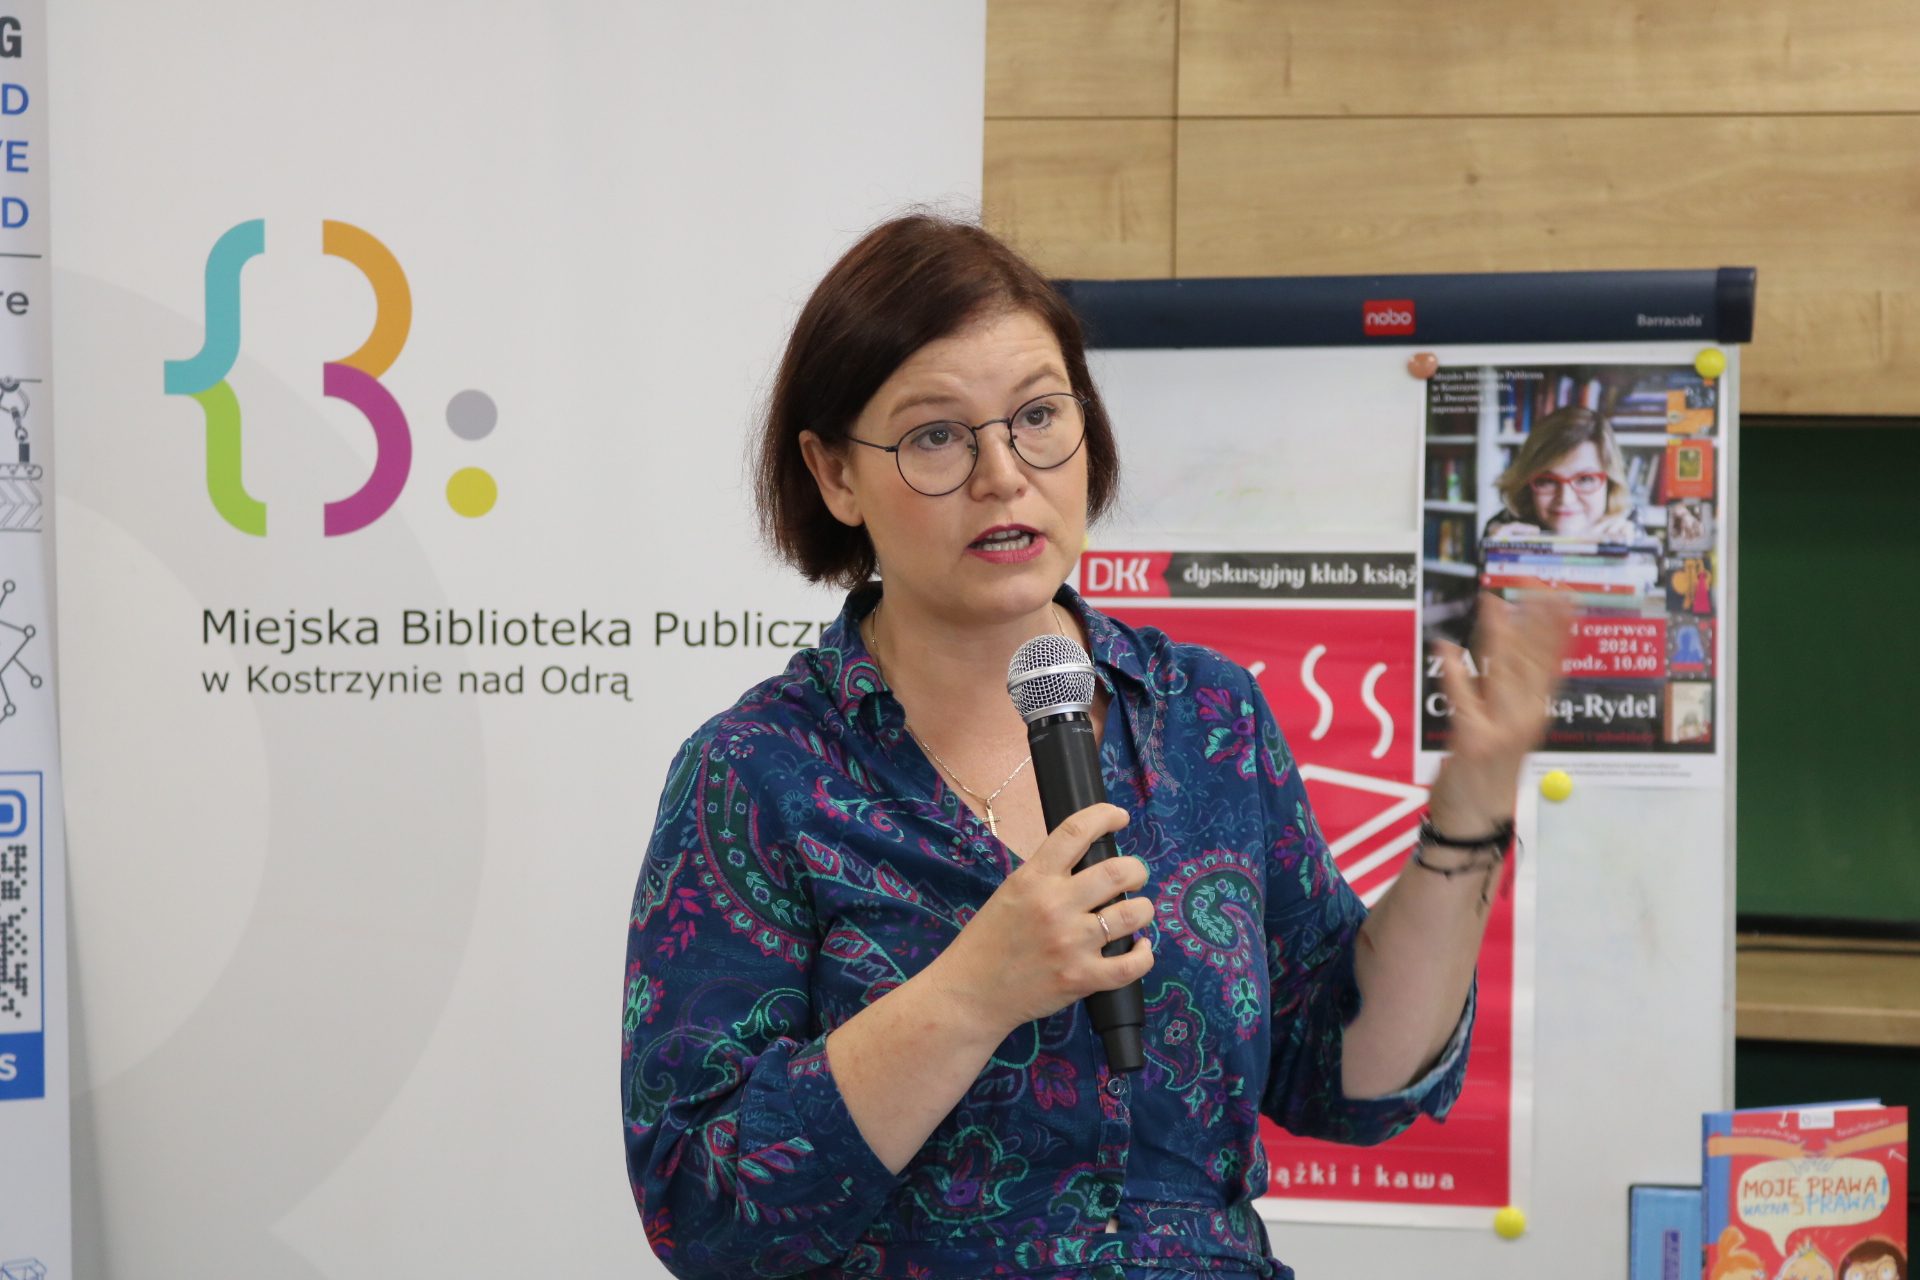 Spotkanie z autorką książek dla dzieci - Anną Czerwińską-Rydel